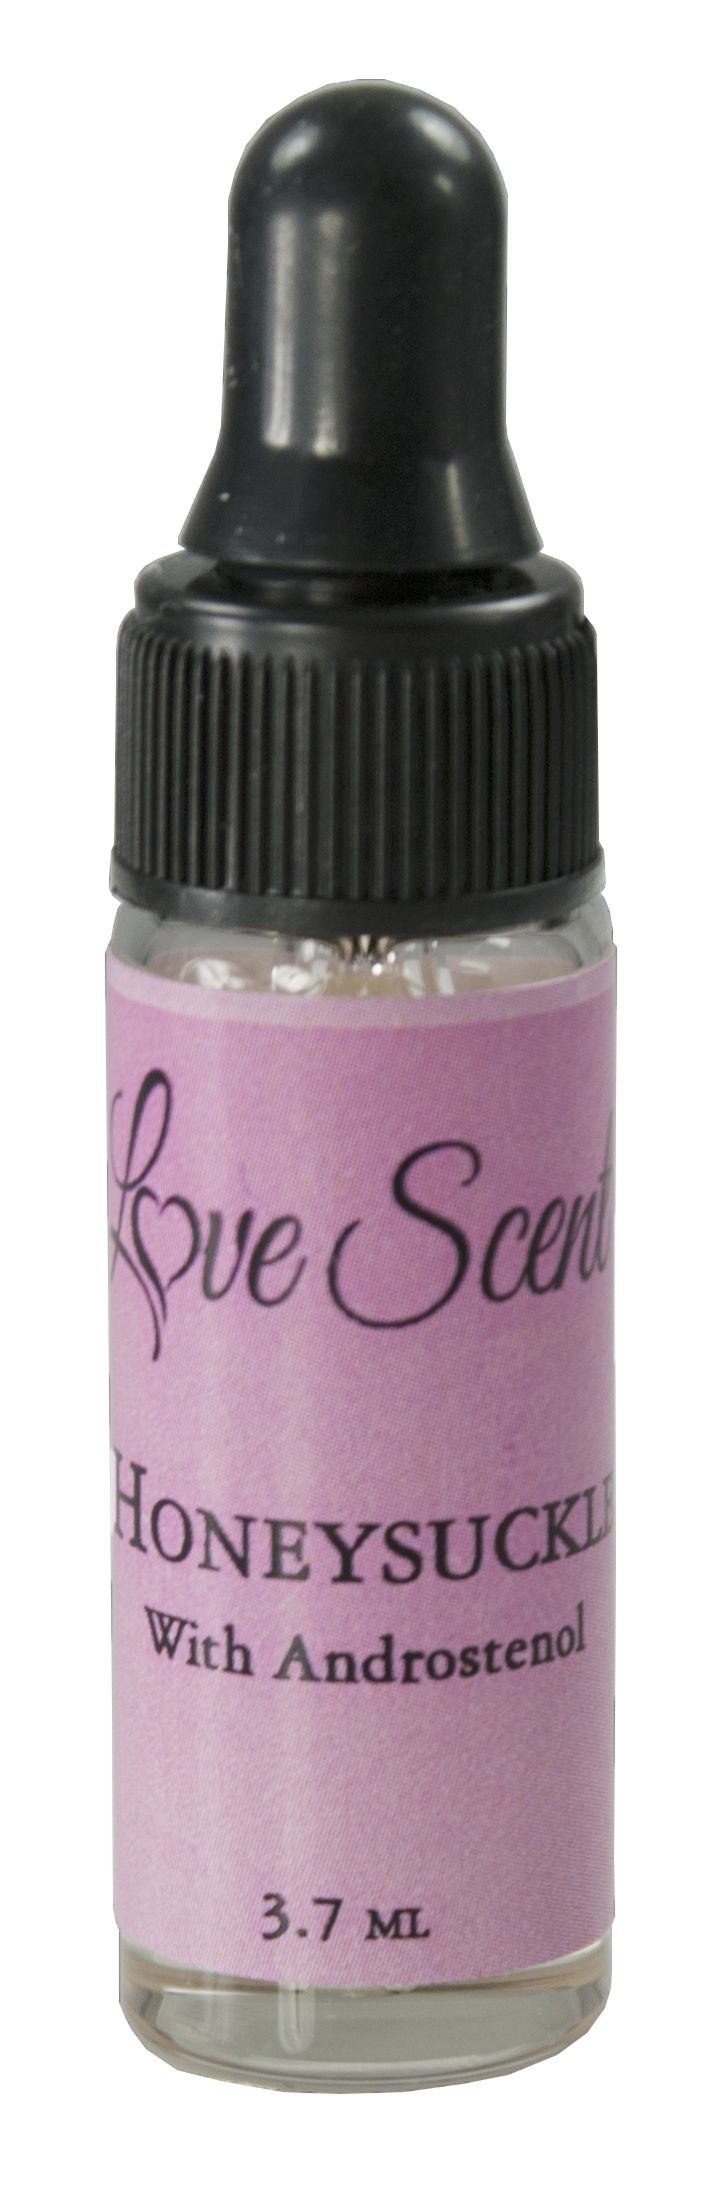 Love Scent Pheromone Oils